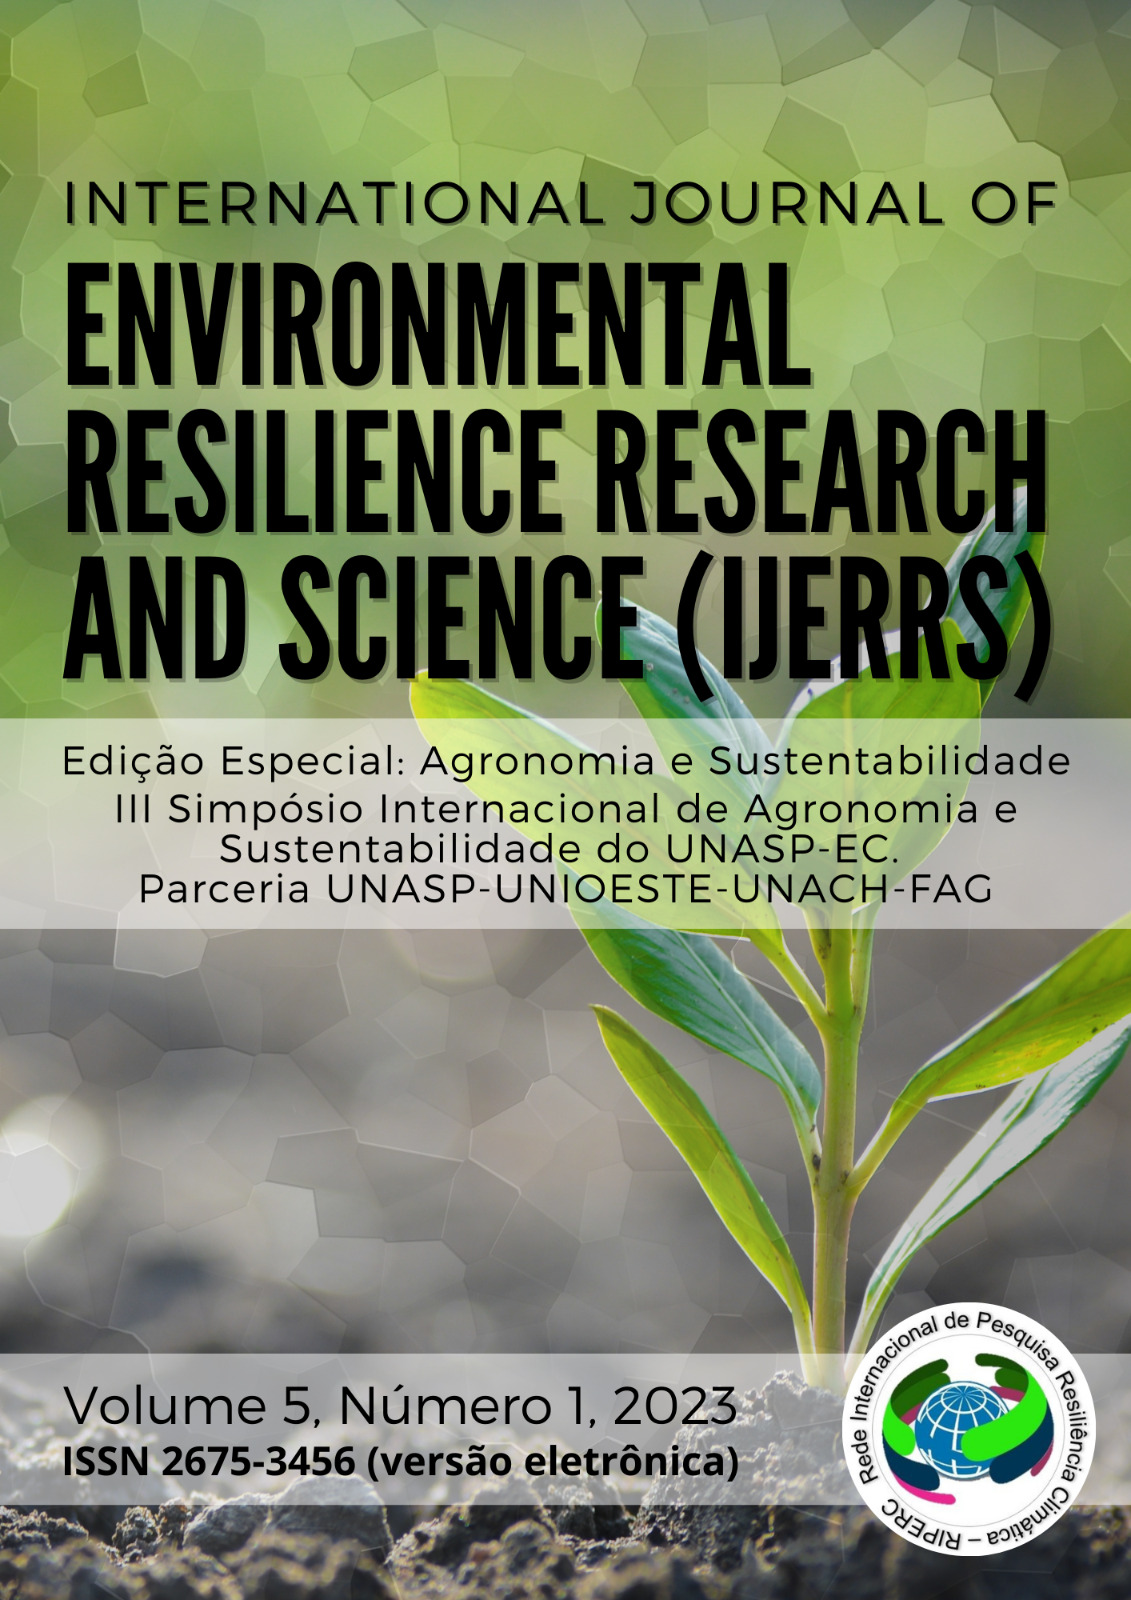 					Afficher Vol. 5 No. 1 (2023): NÚMERO ESPECIAL - Agronomia e Sustentabilidade 
				